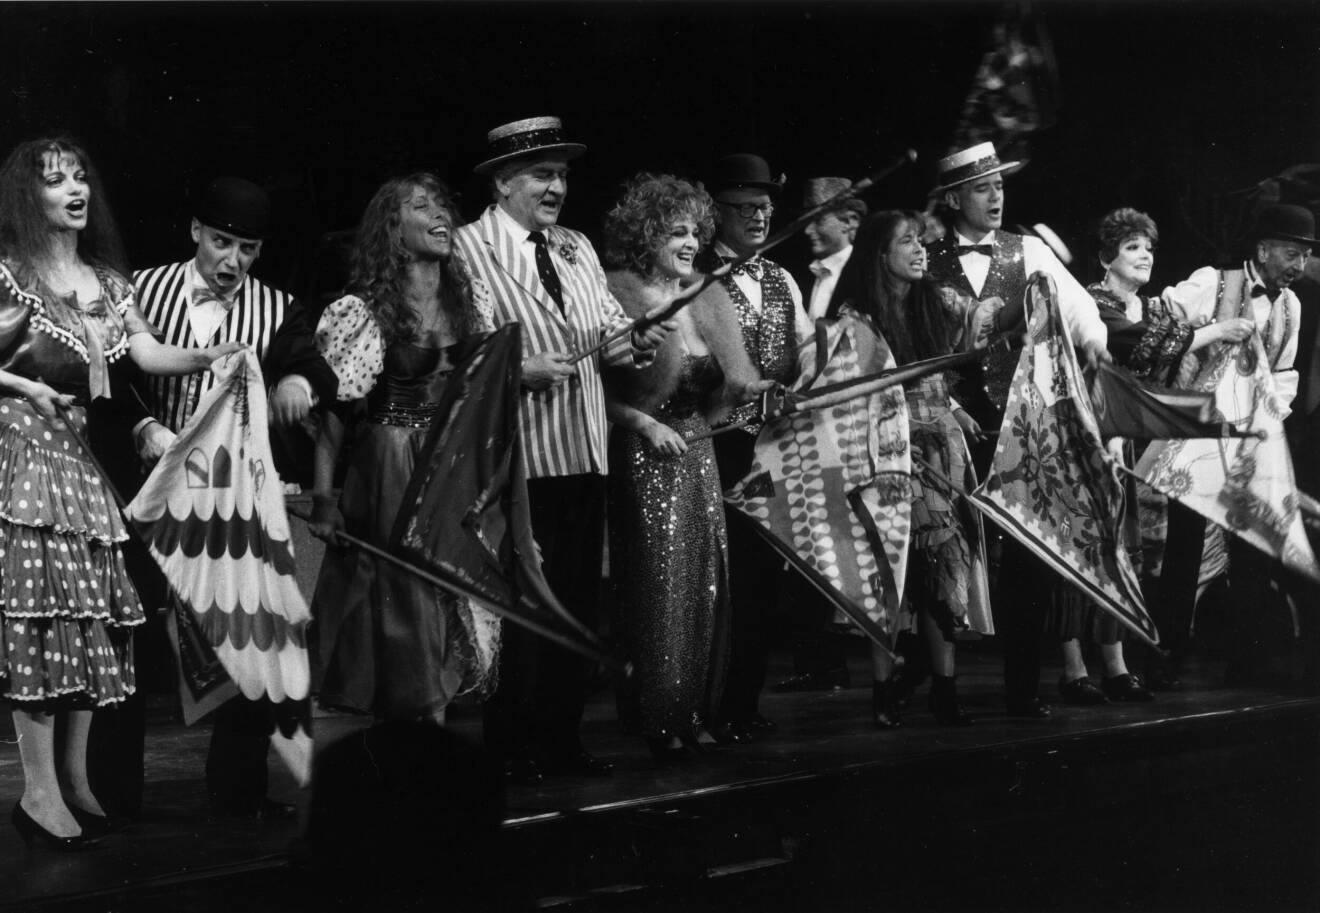 År 1990 stod hon på scenen med showen Tingeltangel på Tyrol på Gröna lund. Här delade Maj-Britt Thörn scen med bland annat Hasse Alfredson, Siw Malmkvist, Povel Ramel och Lotta Ramel.